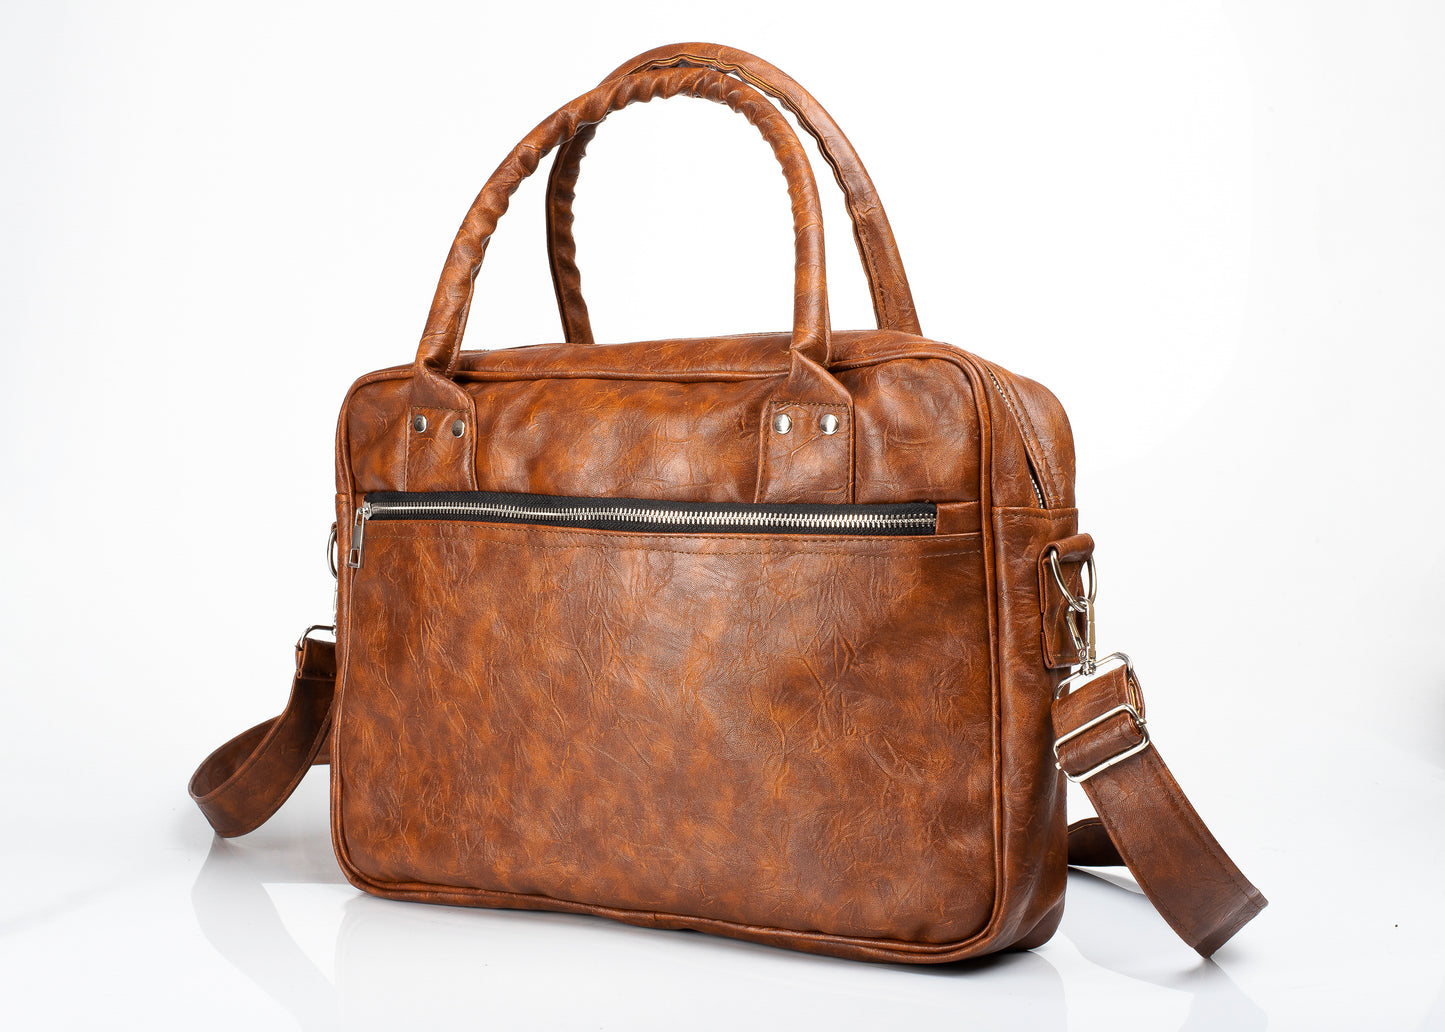 Nova briefcase bag